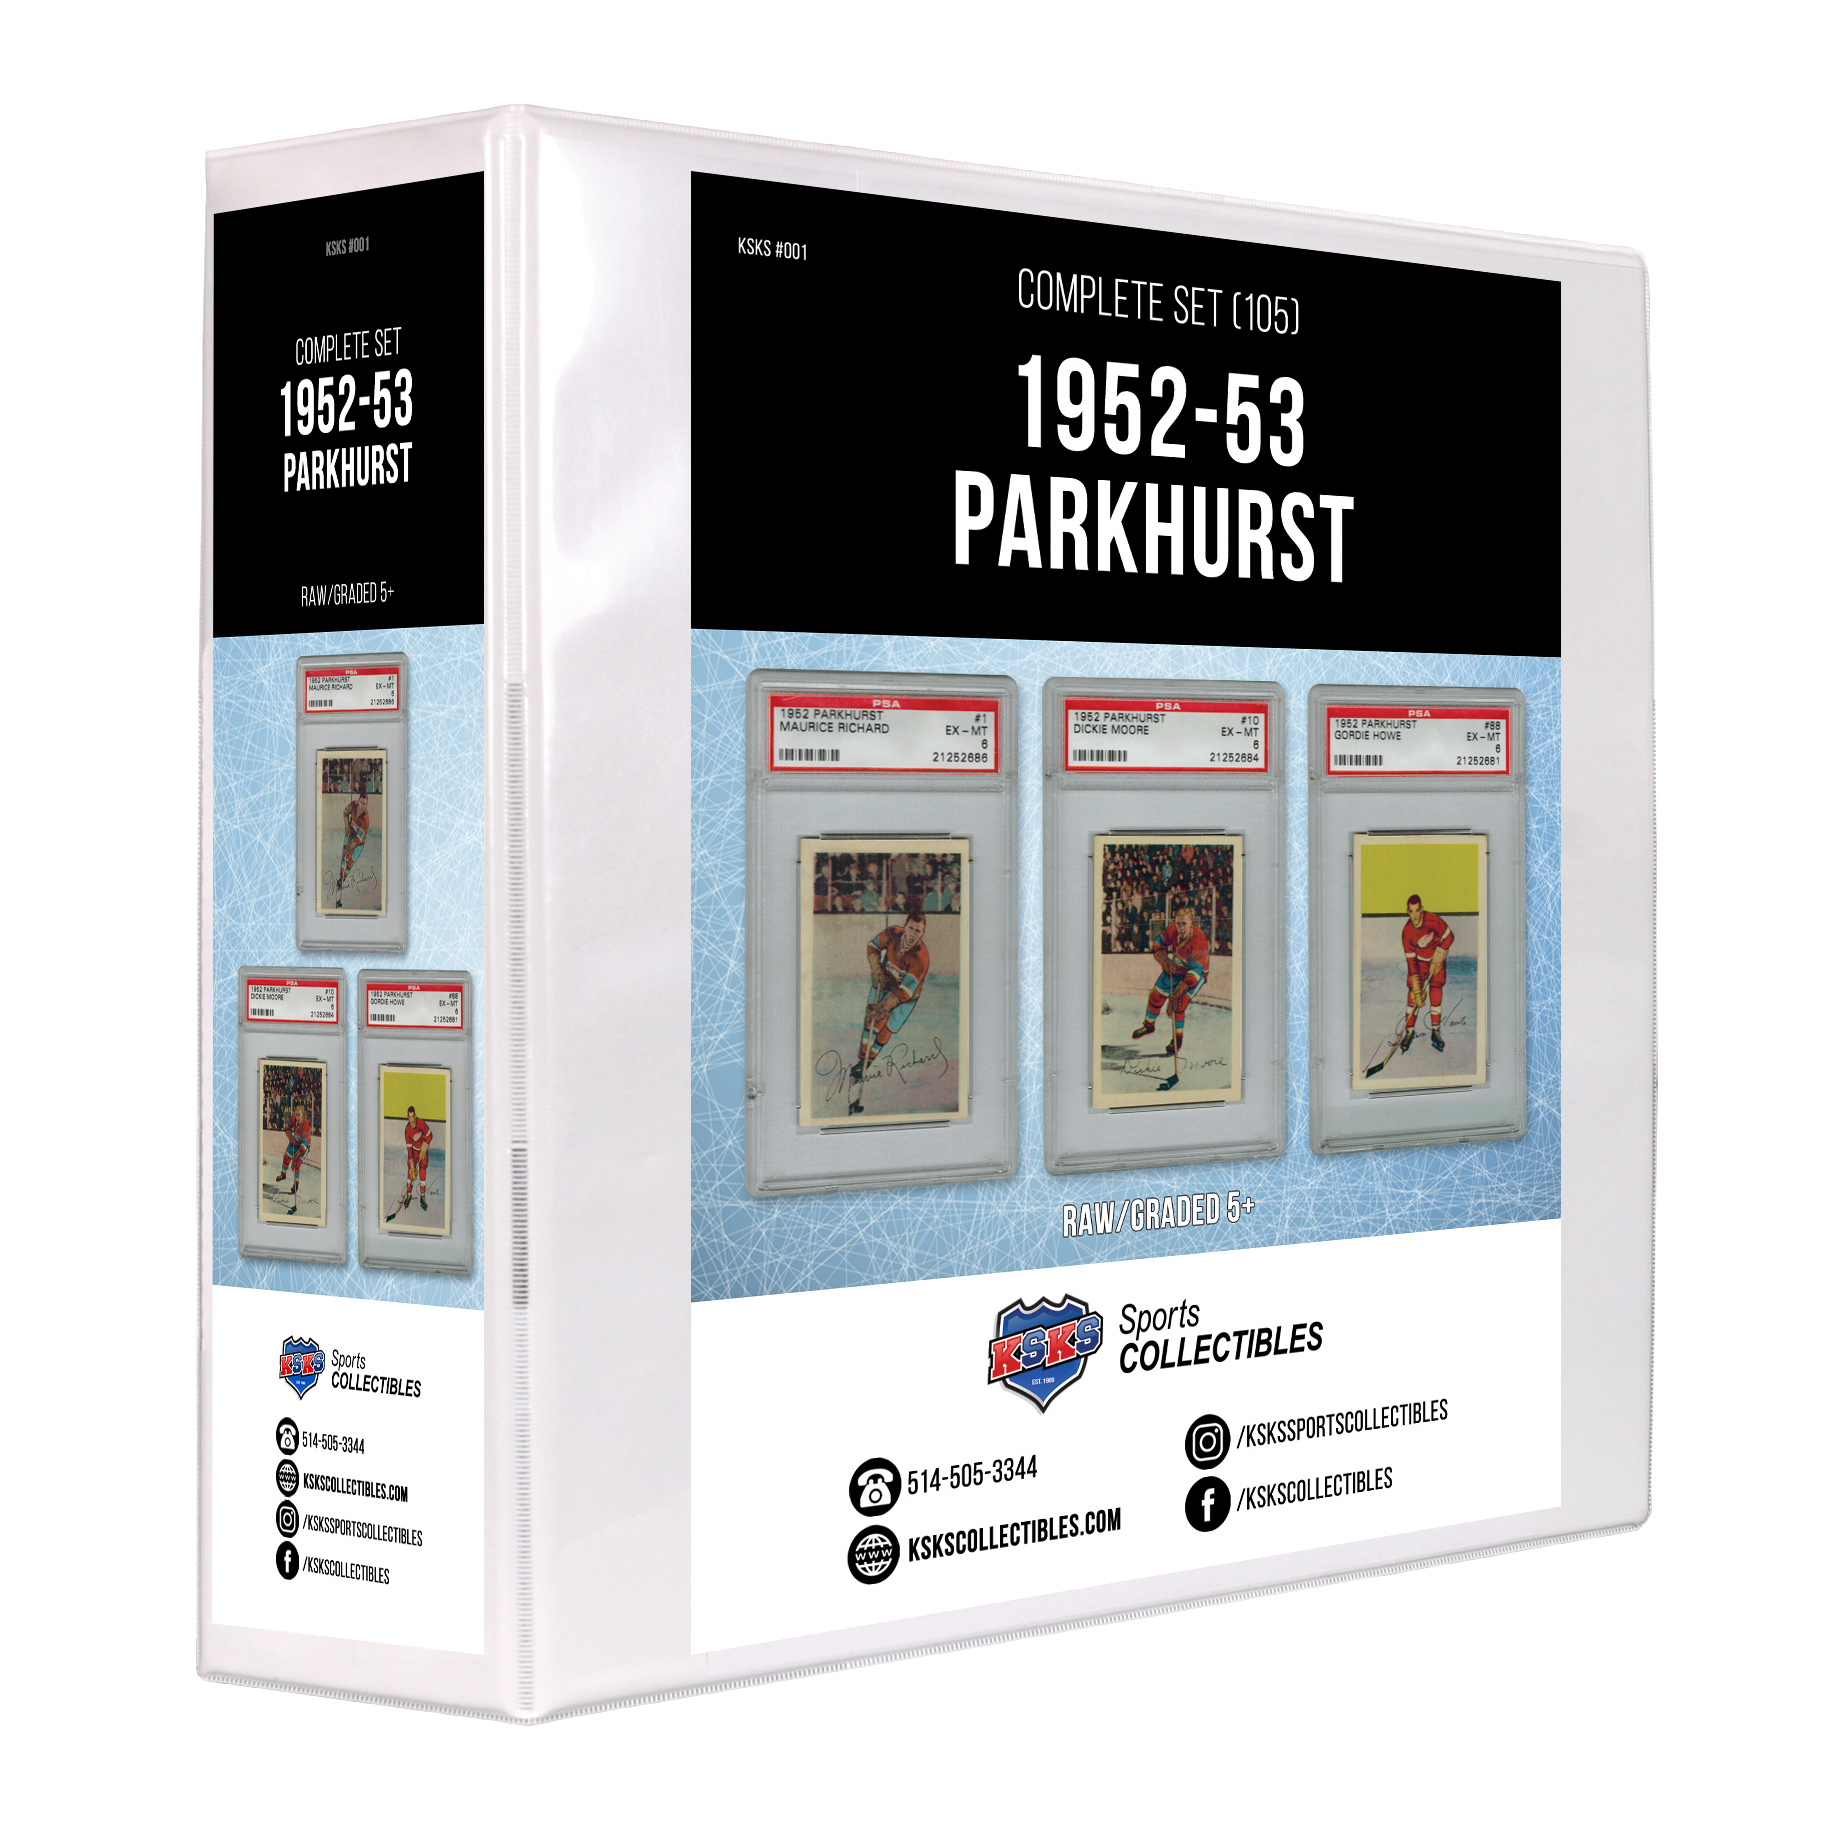 1952/53 Parkhurst Hockey Complete Set 1-105 Raw/Graded 5+ KSKS #001